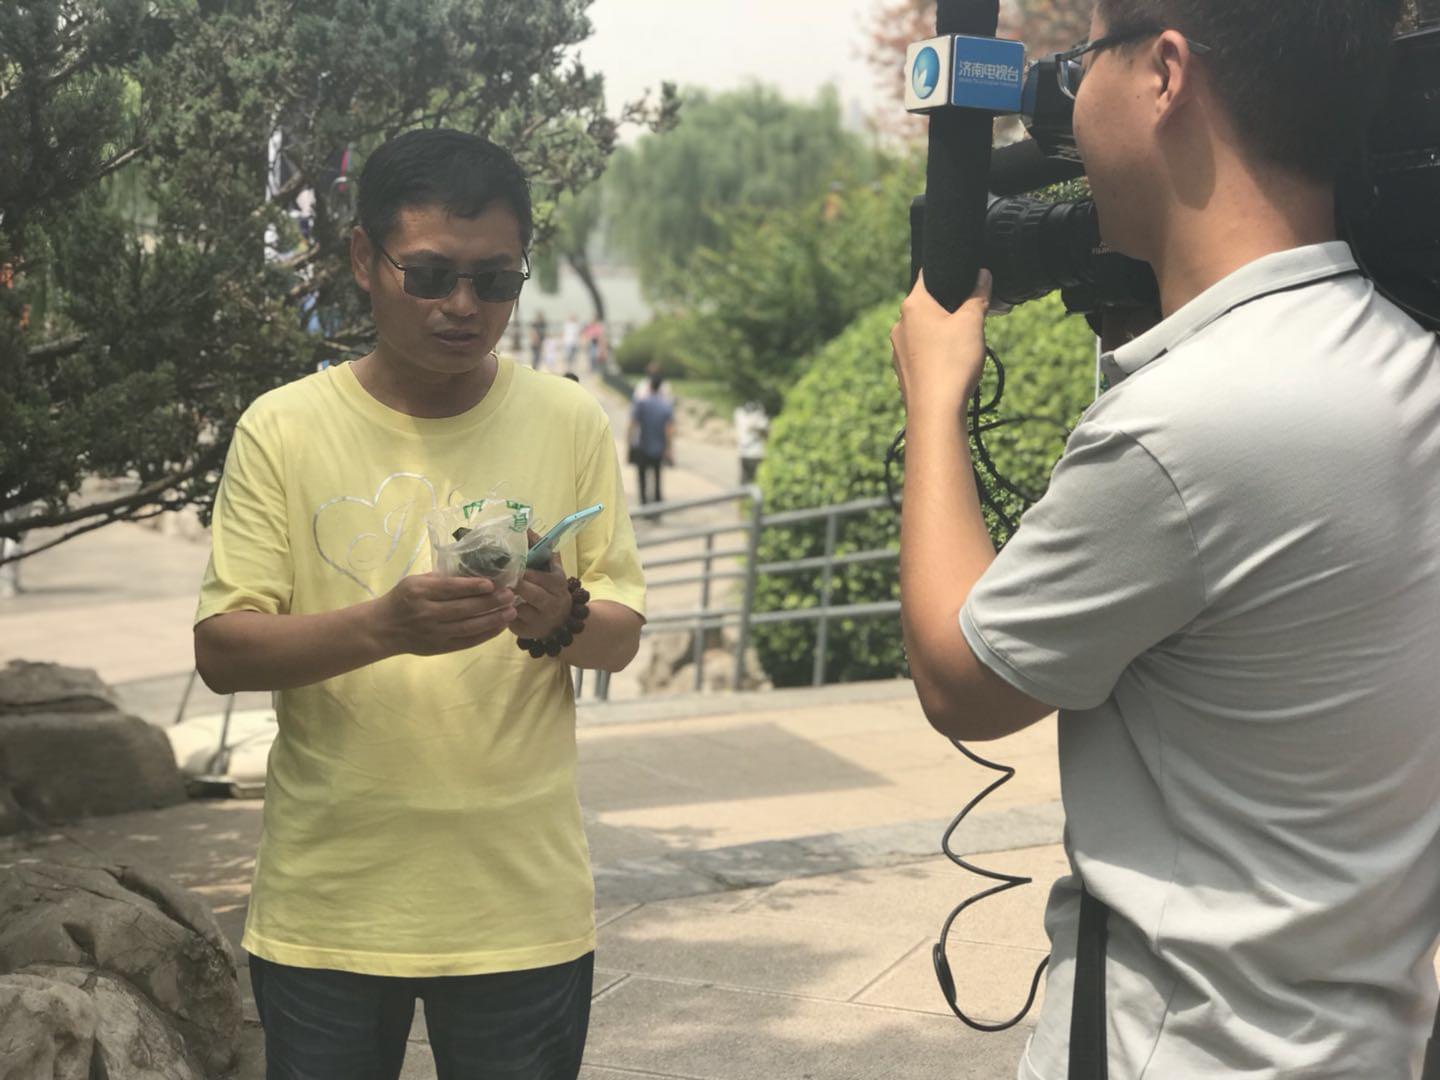 领到荷叶粽的市民心情激动地接受电视台采访